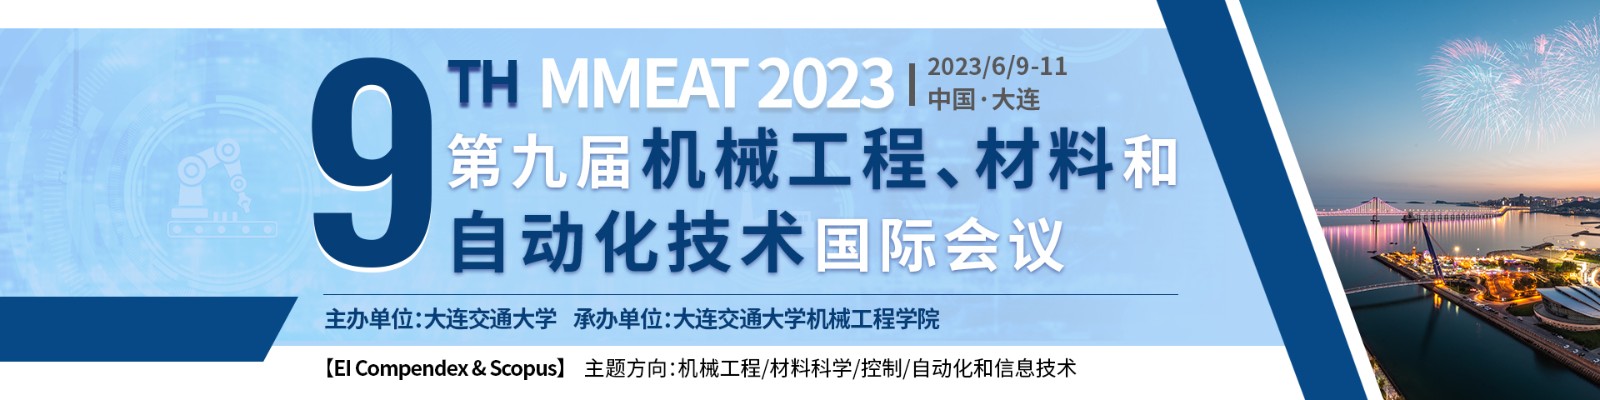 2023年6月大连站-MMEAT-上线平台1920x480.jpg